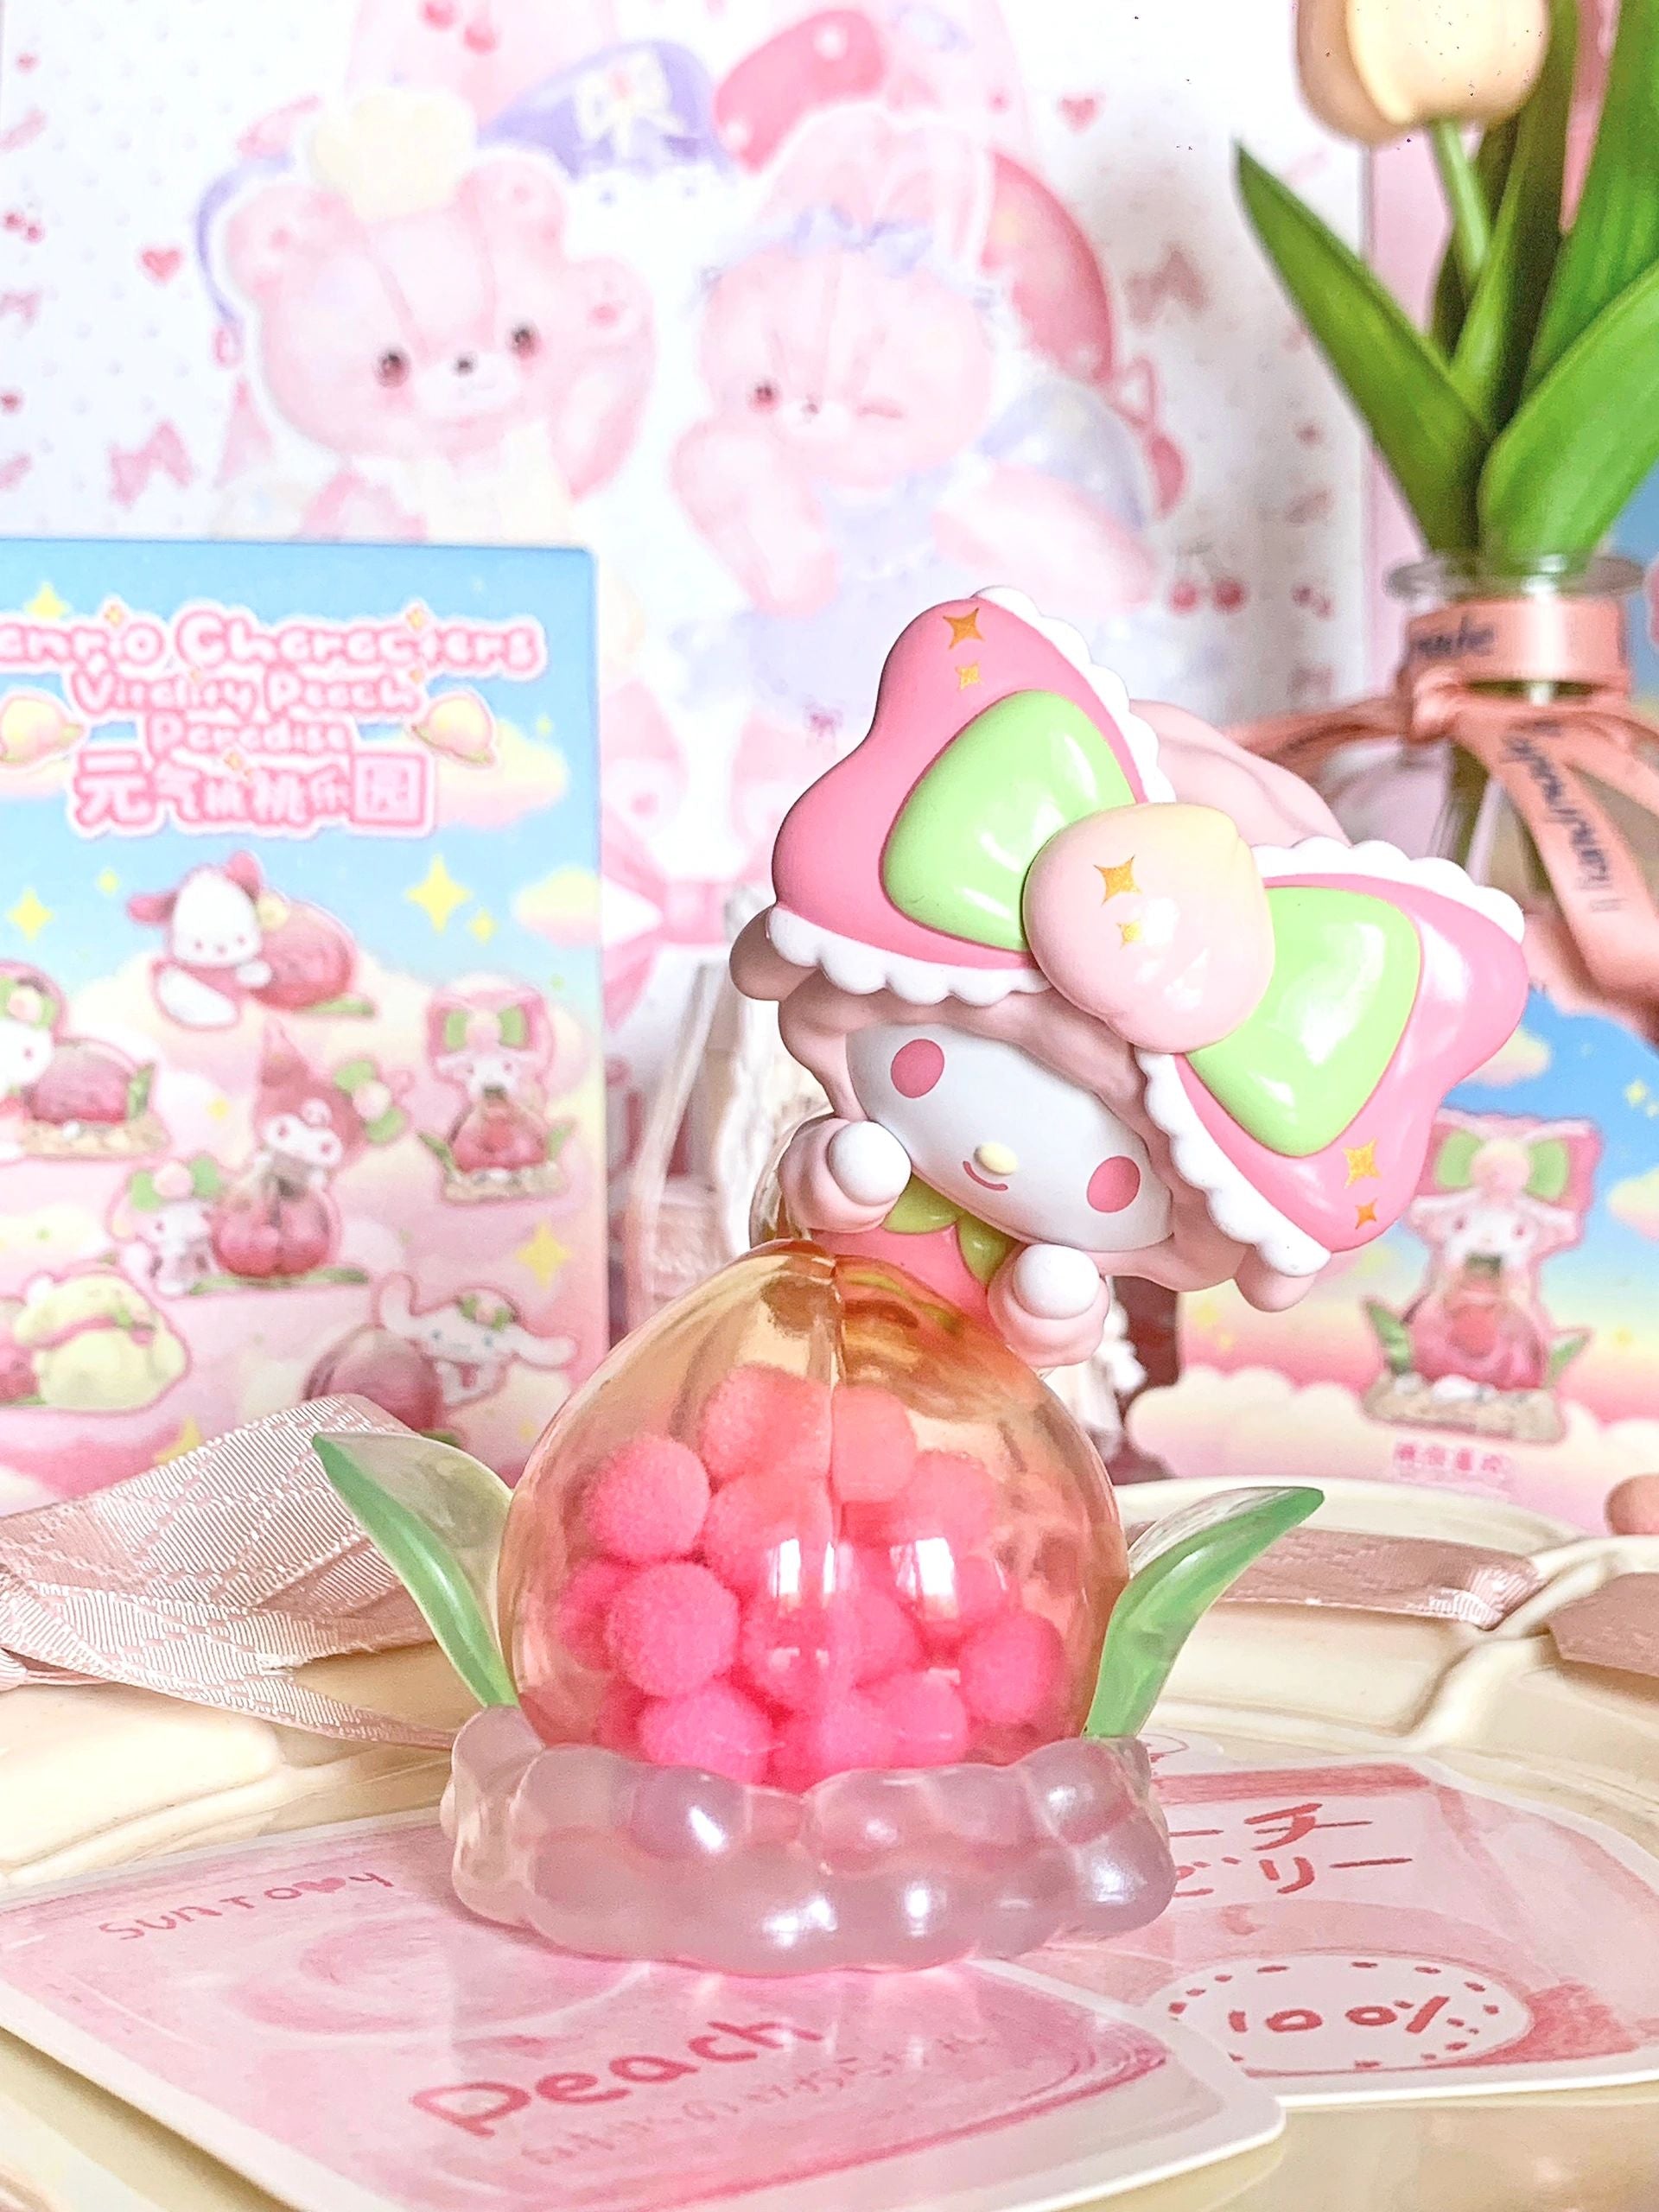 Sanrio Vitality Peach Paradise Blind Box – GoodChoyice